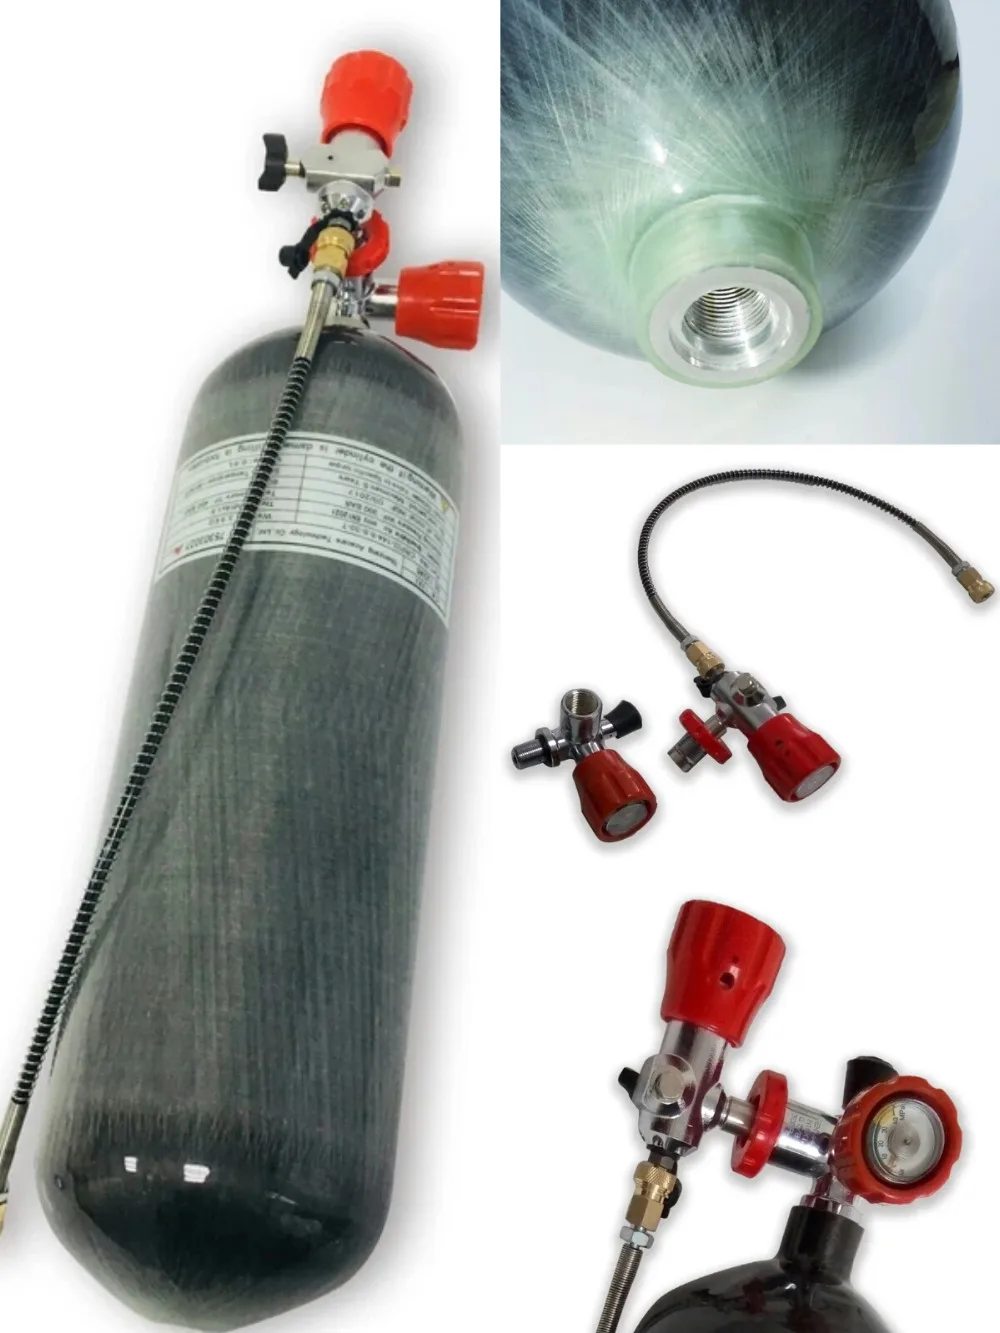 AC168101 6.8L композитный цилиндр из углеродного волокна/воздушная бутылка/Автономный дыхательный аппарат и клапан и заправка станции Прямая